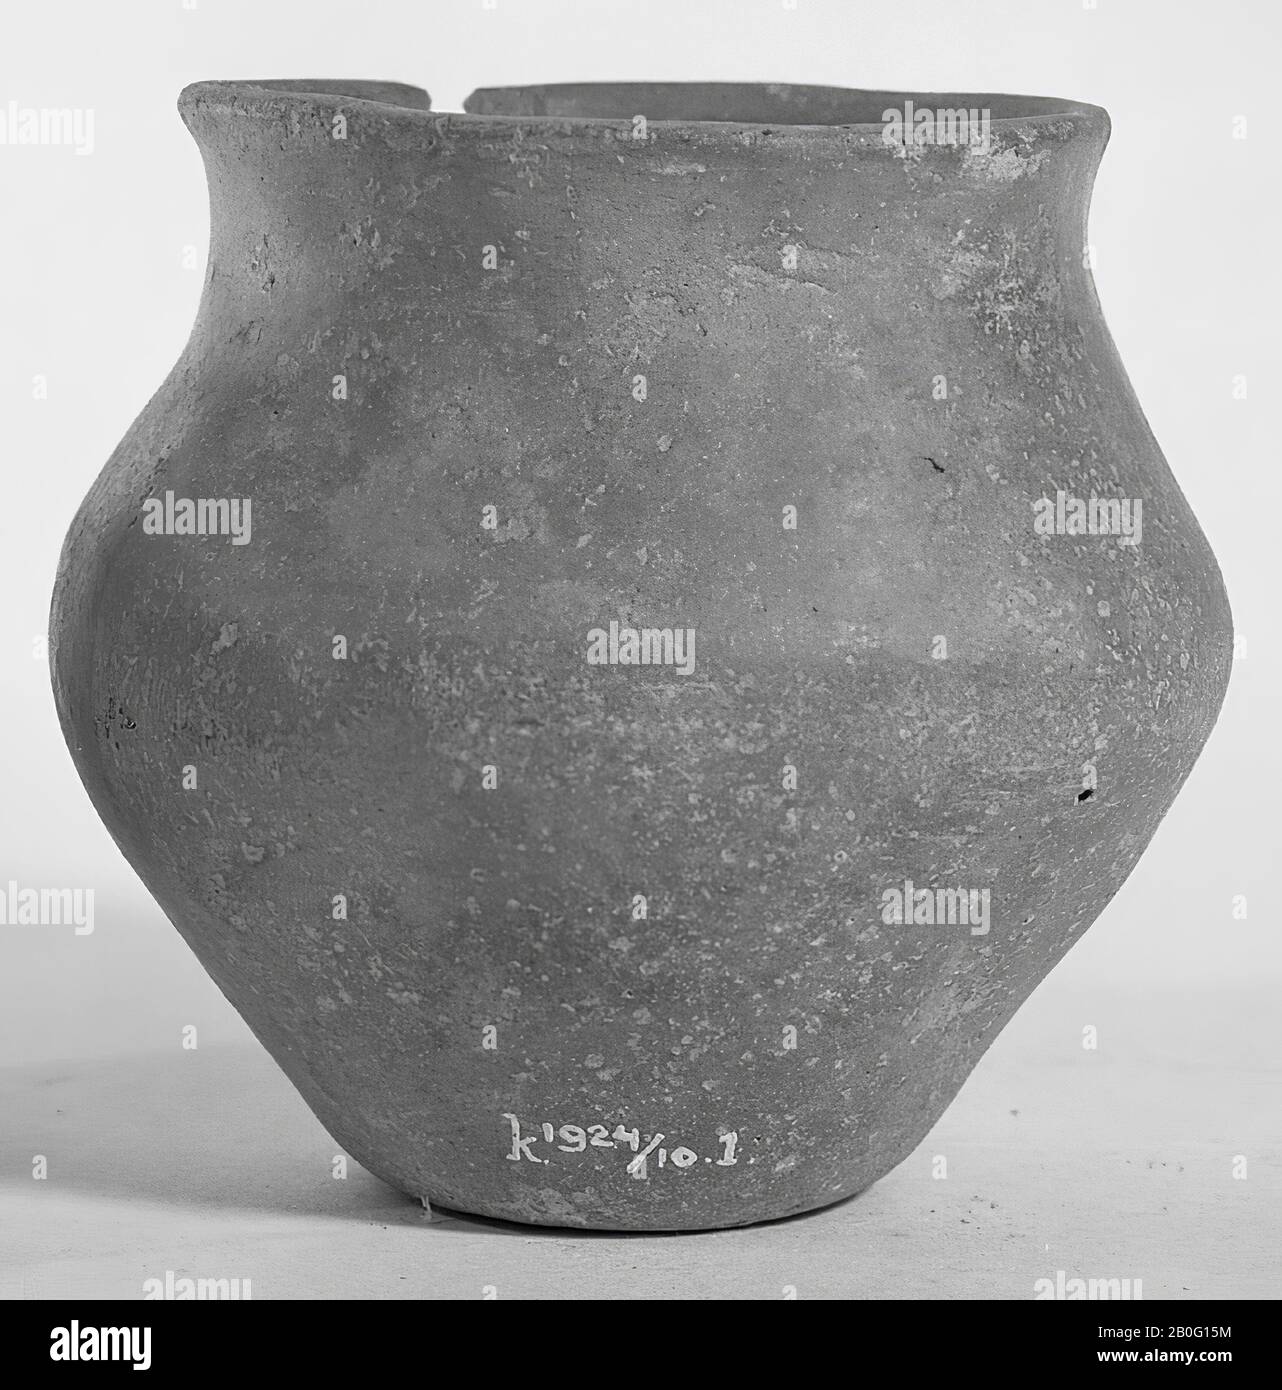 Kleine graue Urne von Töpferwaren kleinen proto-sächsischen Typs - verjüngender Bauch. Zusammen mit einem Bronze-Rasierer k 1924 gefunden Stockfoto